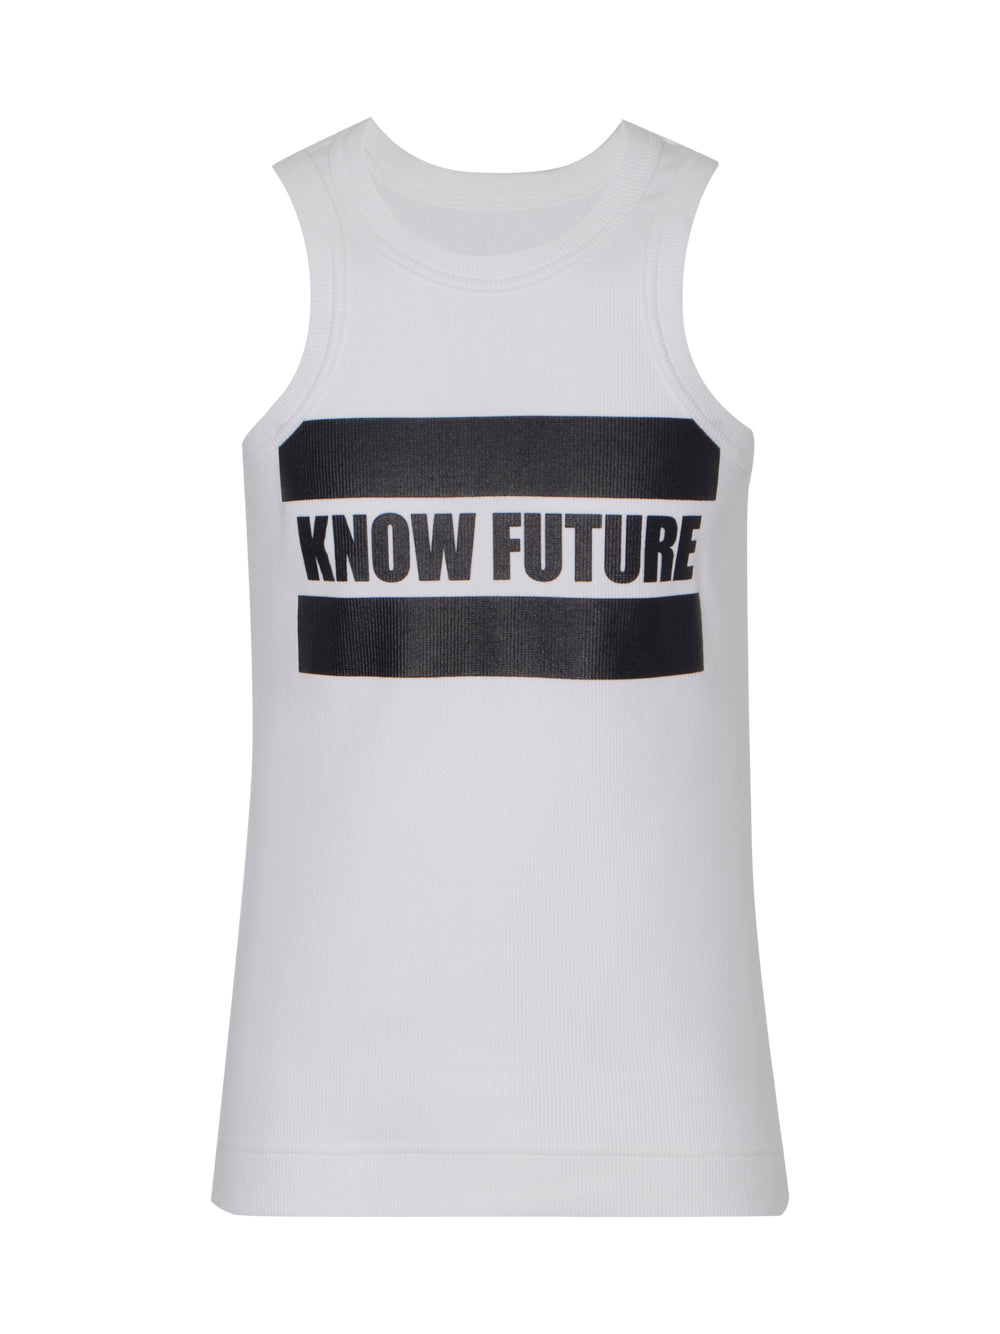 Know Future Tank Top (White)